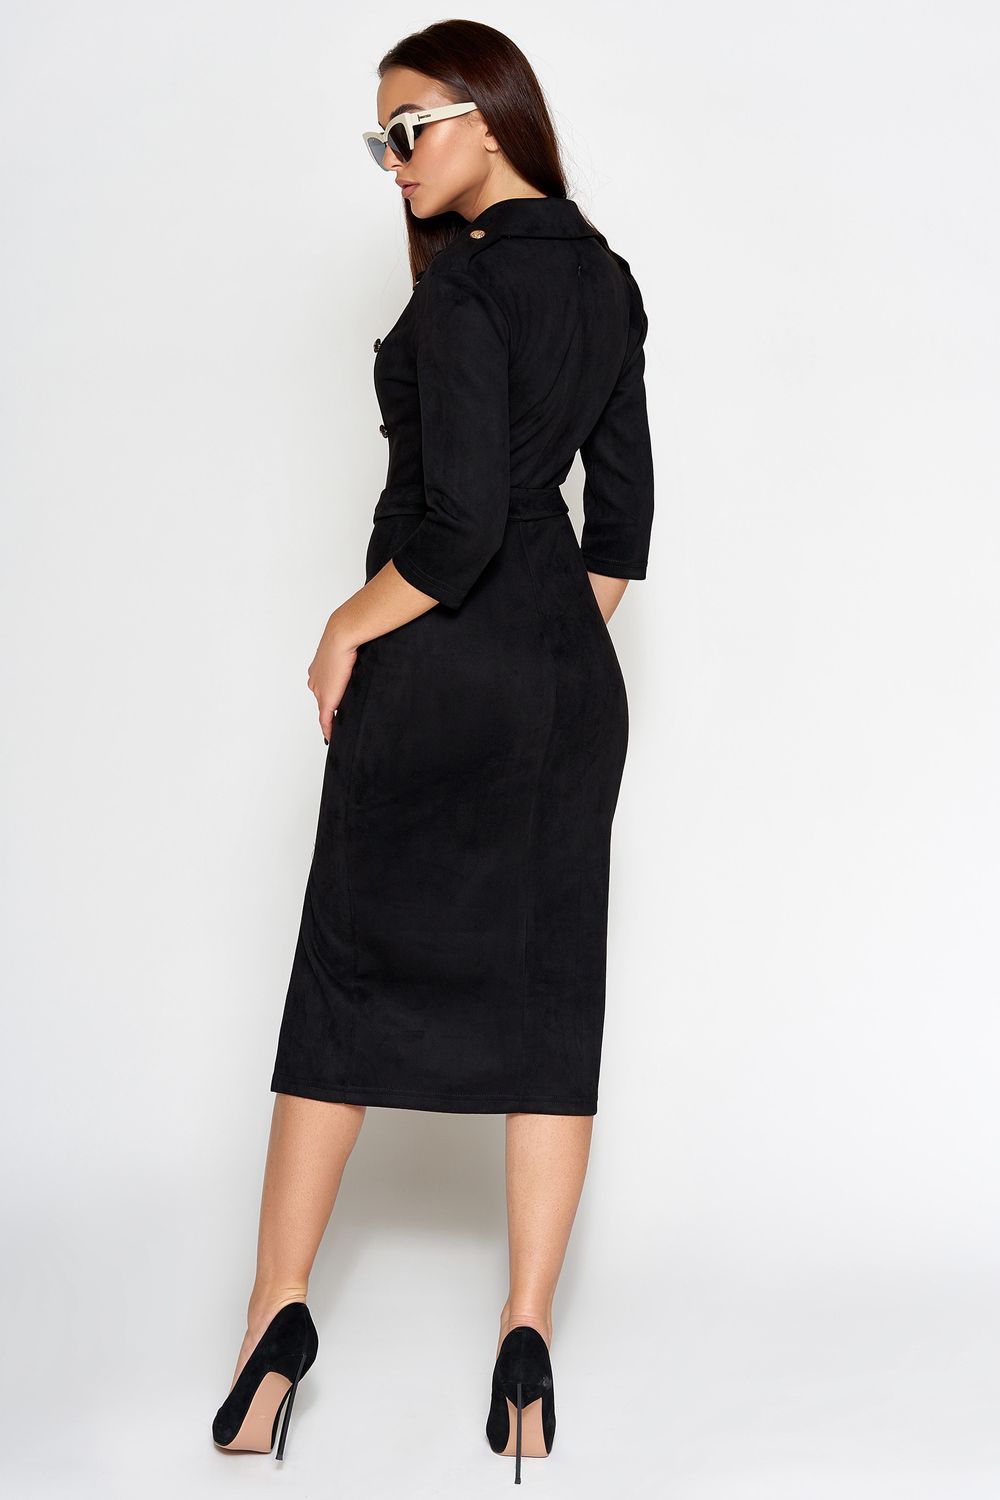 Замшевое платье в деловом стиле черное - фото